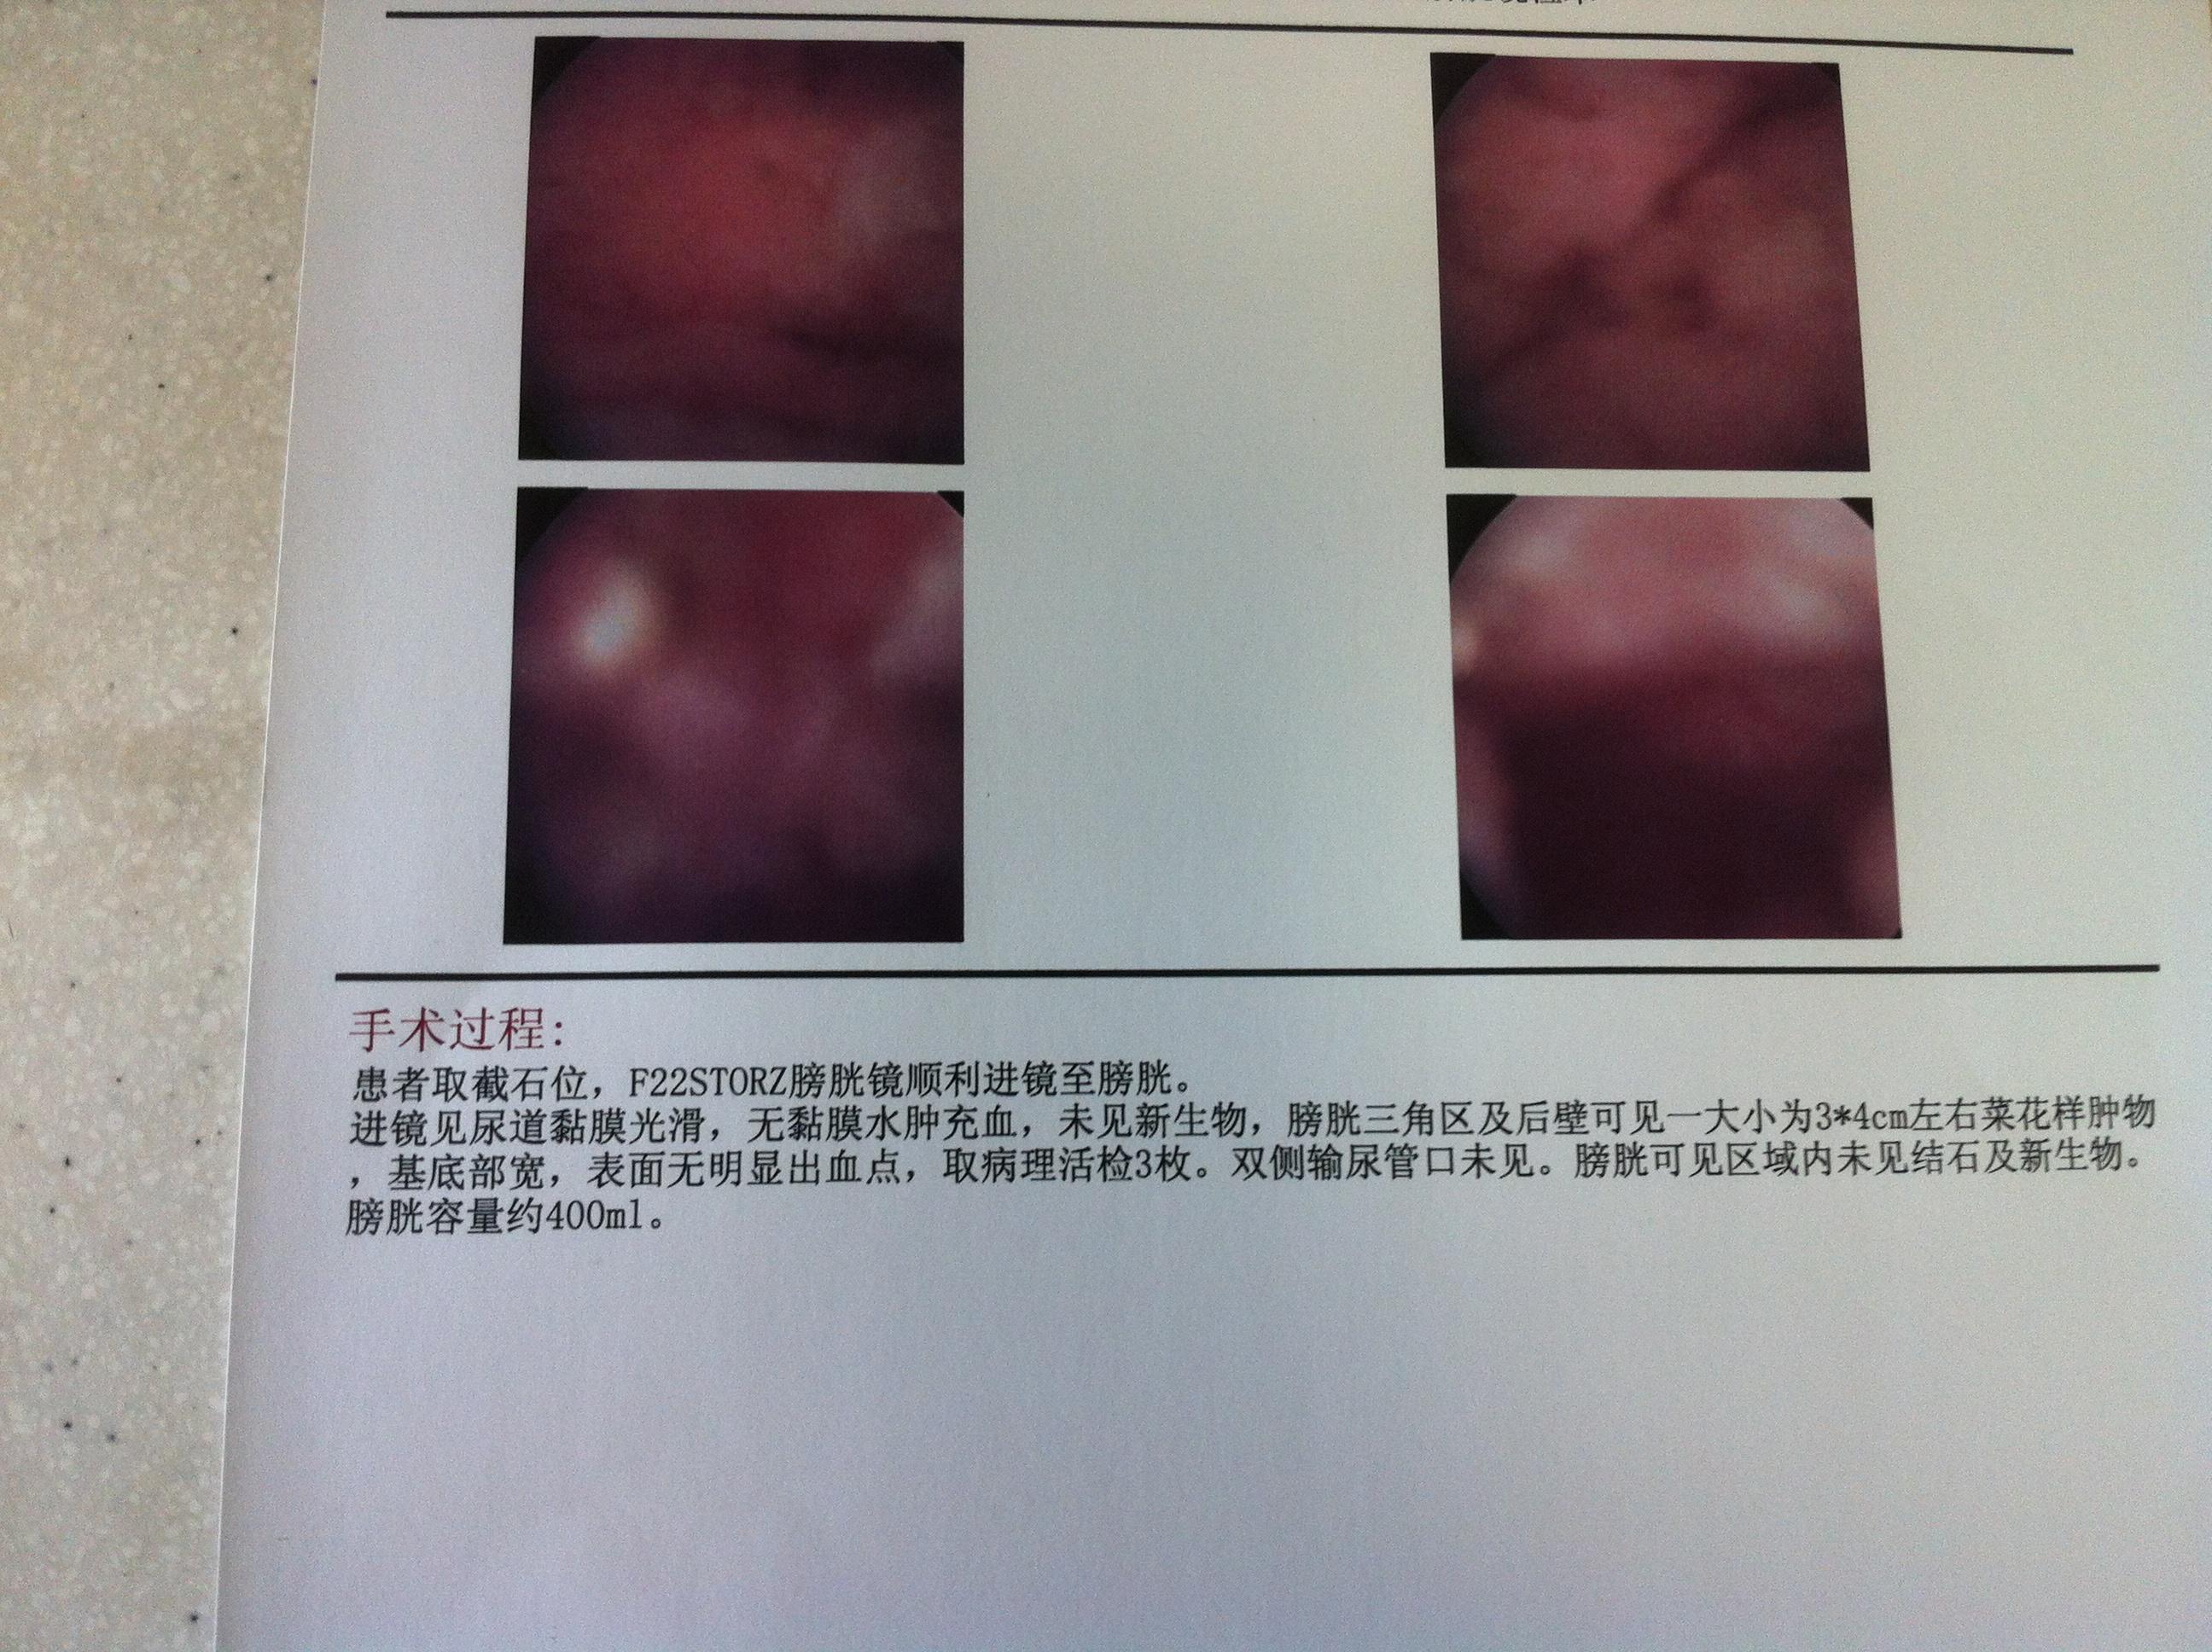 膀胱镜检查,在三角区有3*4cm菜花状肿物,基底部宽,双侧输尿管未见,但